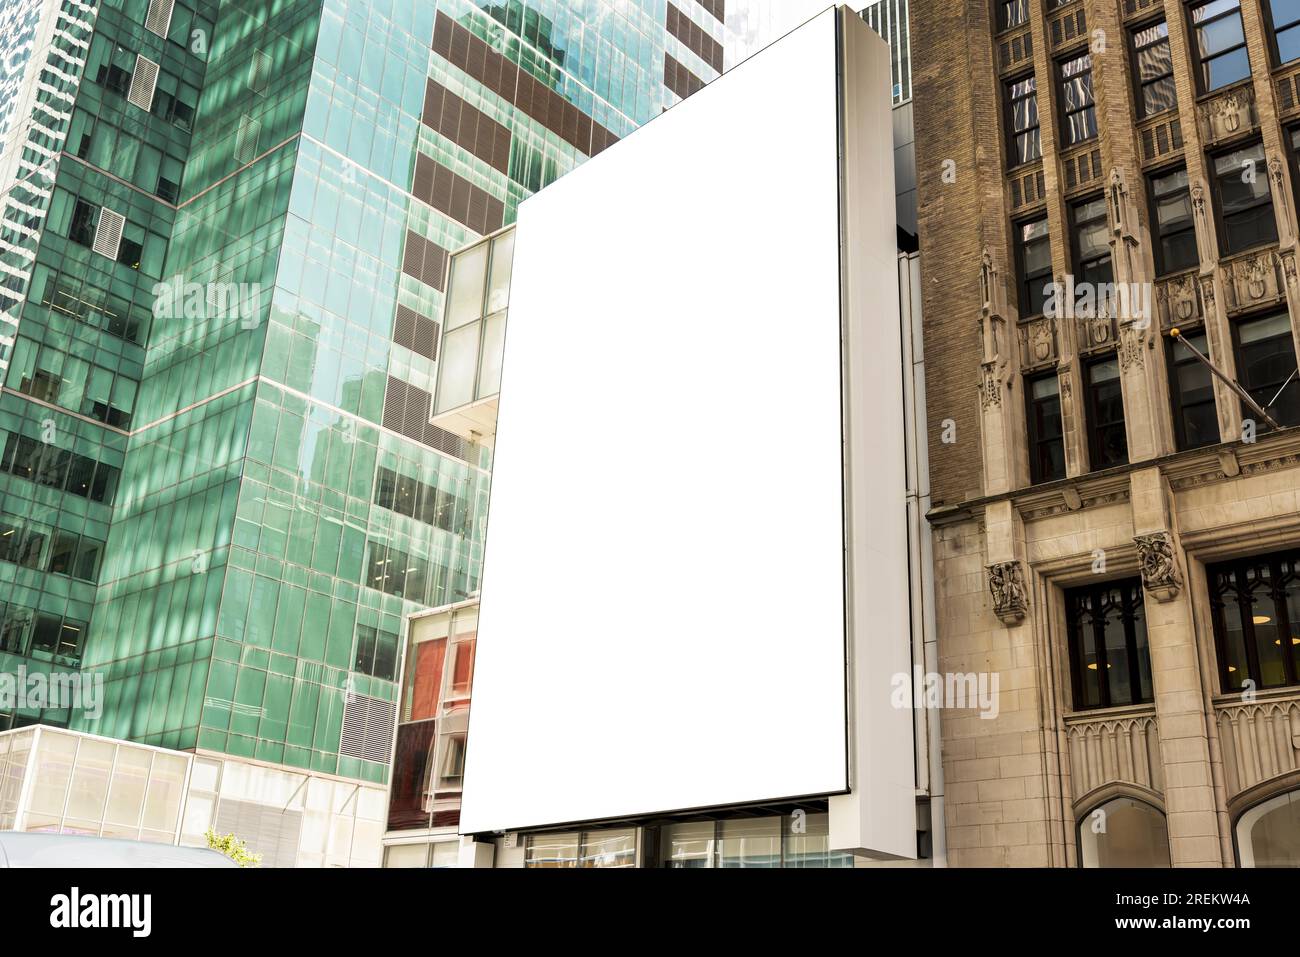 Modellare l'edificio cittadino con cartelloni pubblicitari. Risoluzione e foto bellissime di alta qualità Foto Stock